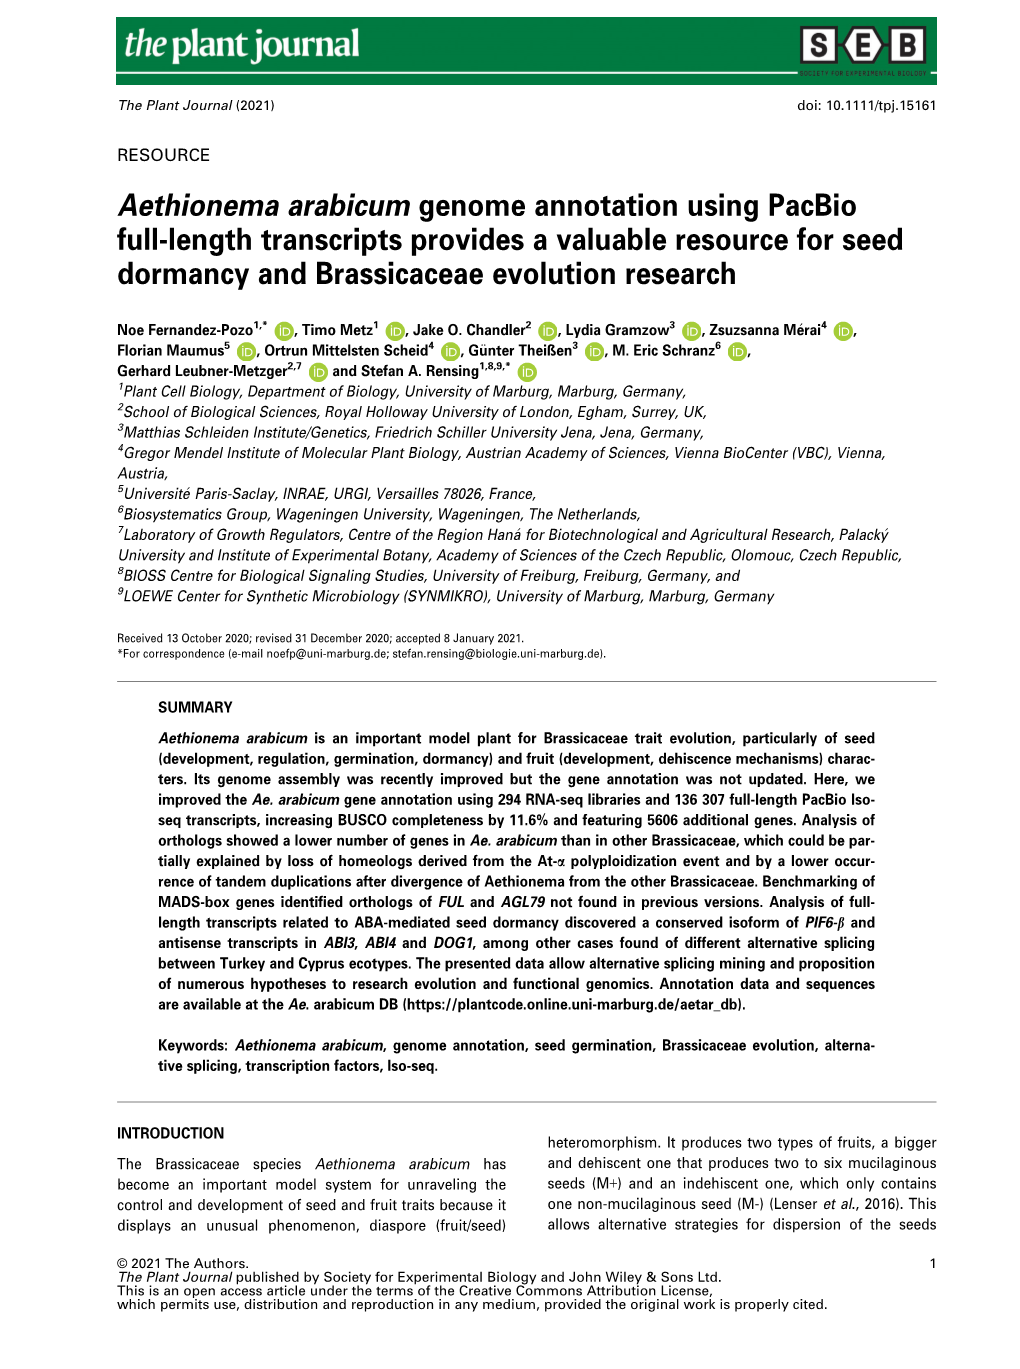 Aethionema Arabicum Genome Annotation Using Pacbio Full‐Length